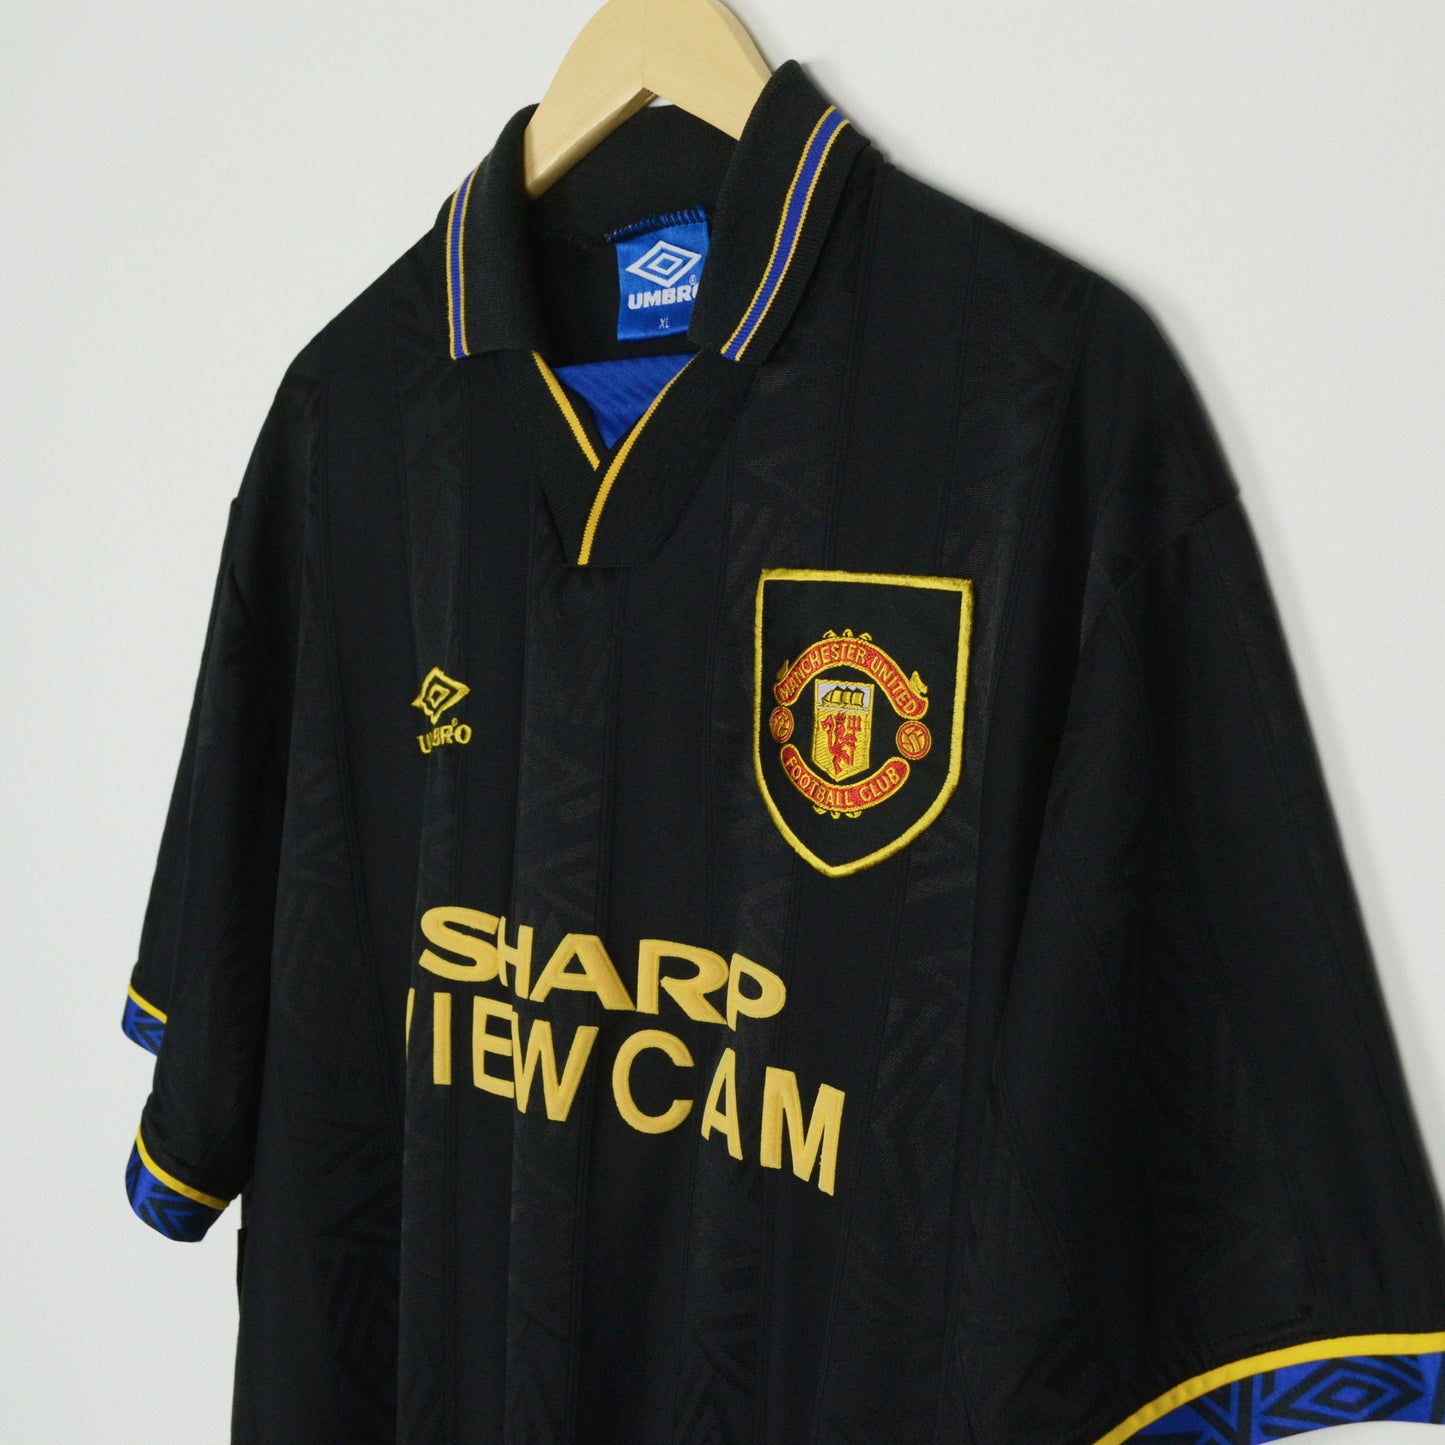 1993-95 Umbro Manchester United Away Shirt XL